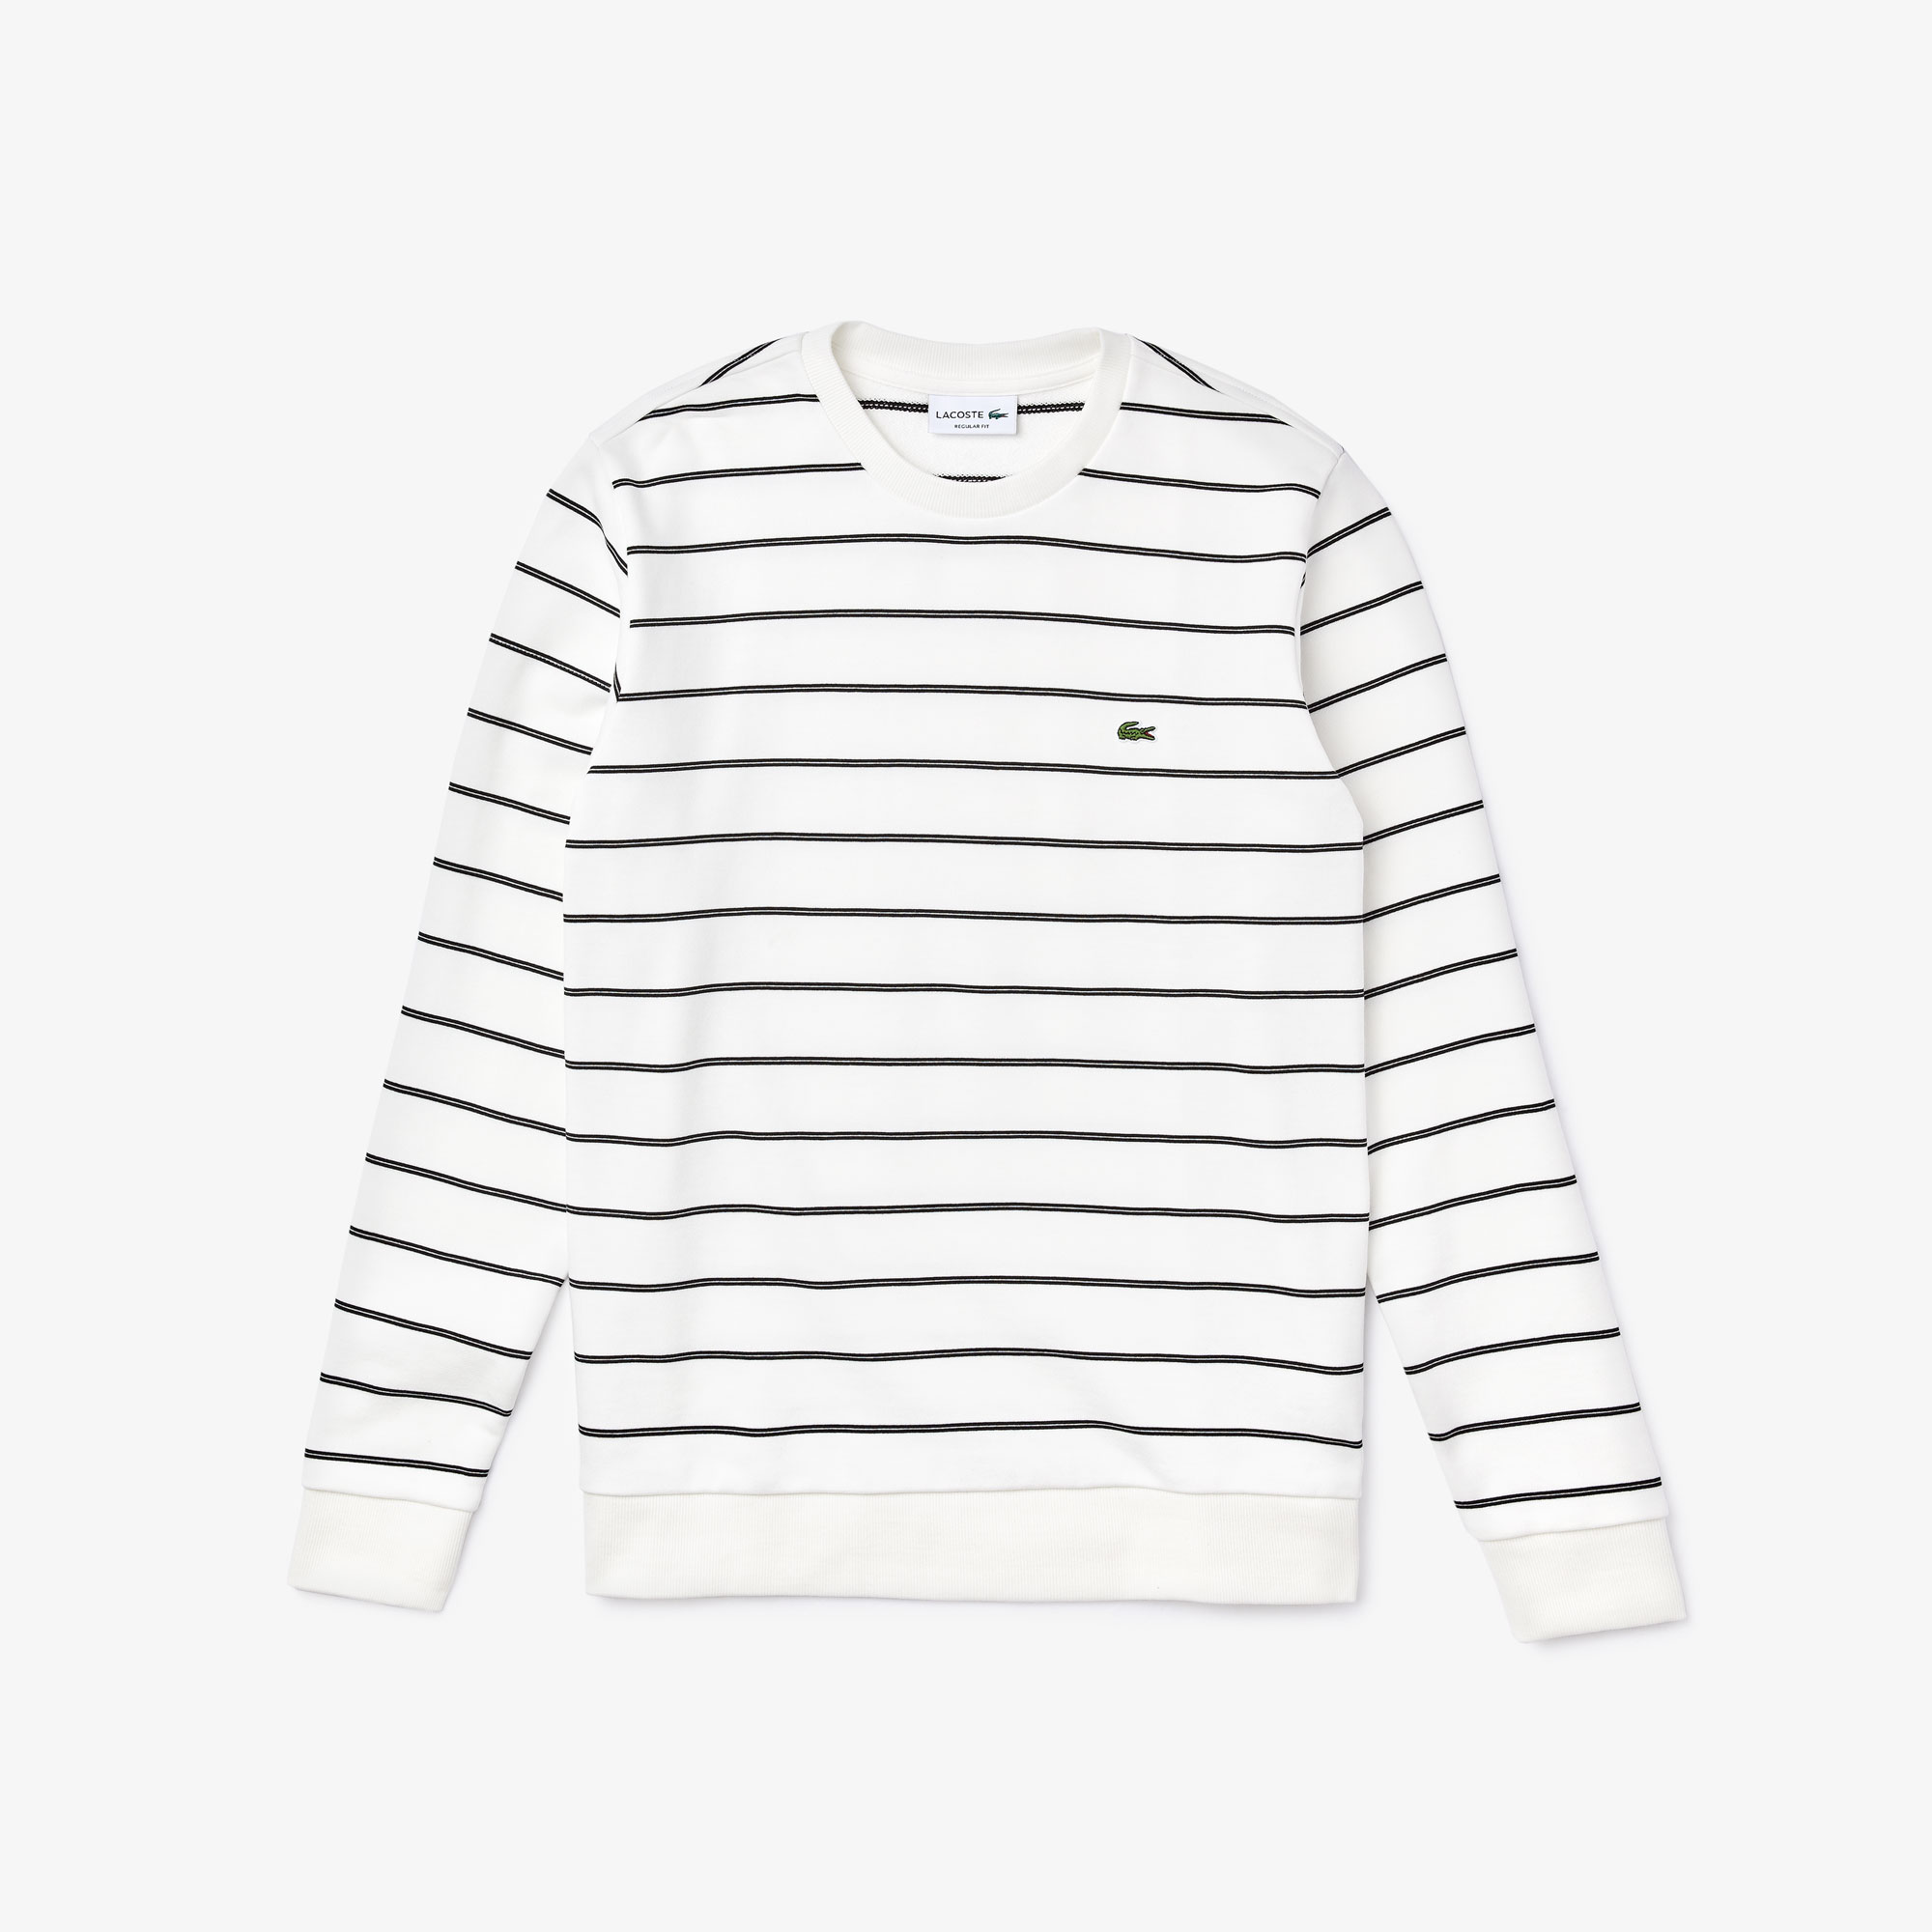 lacoste striped sweatshirt